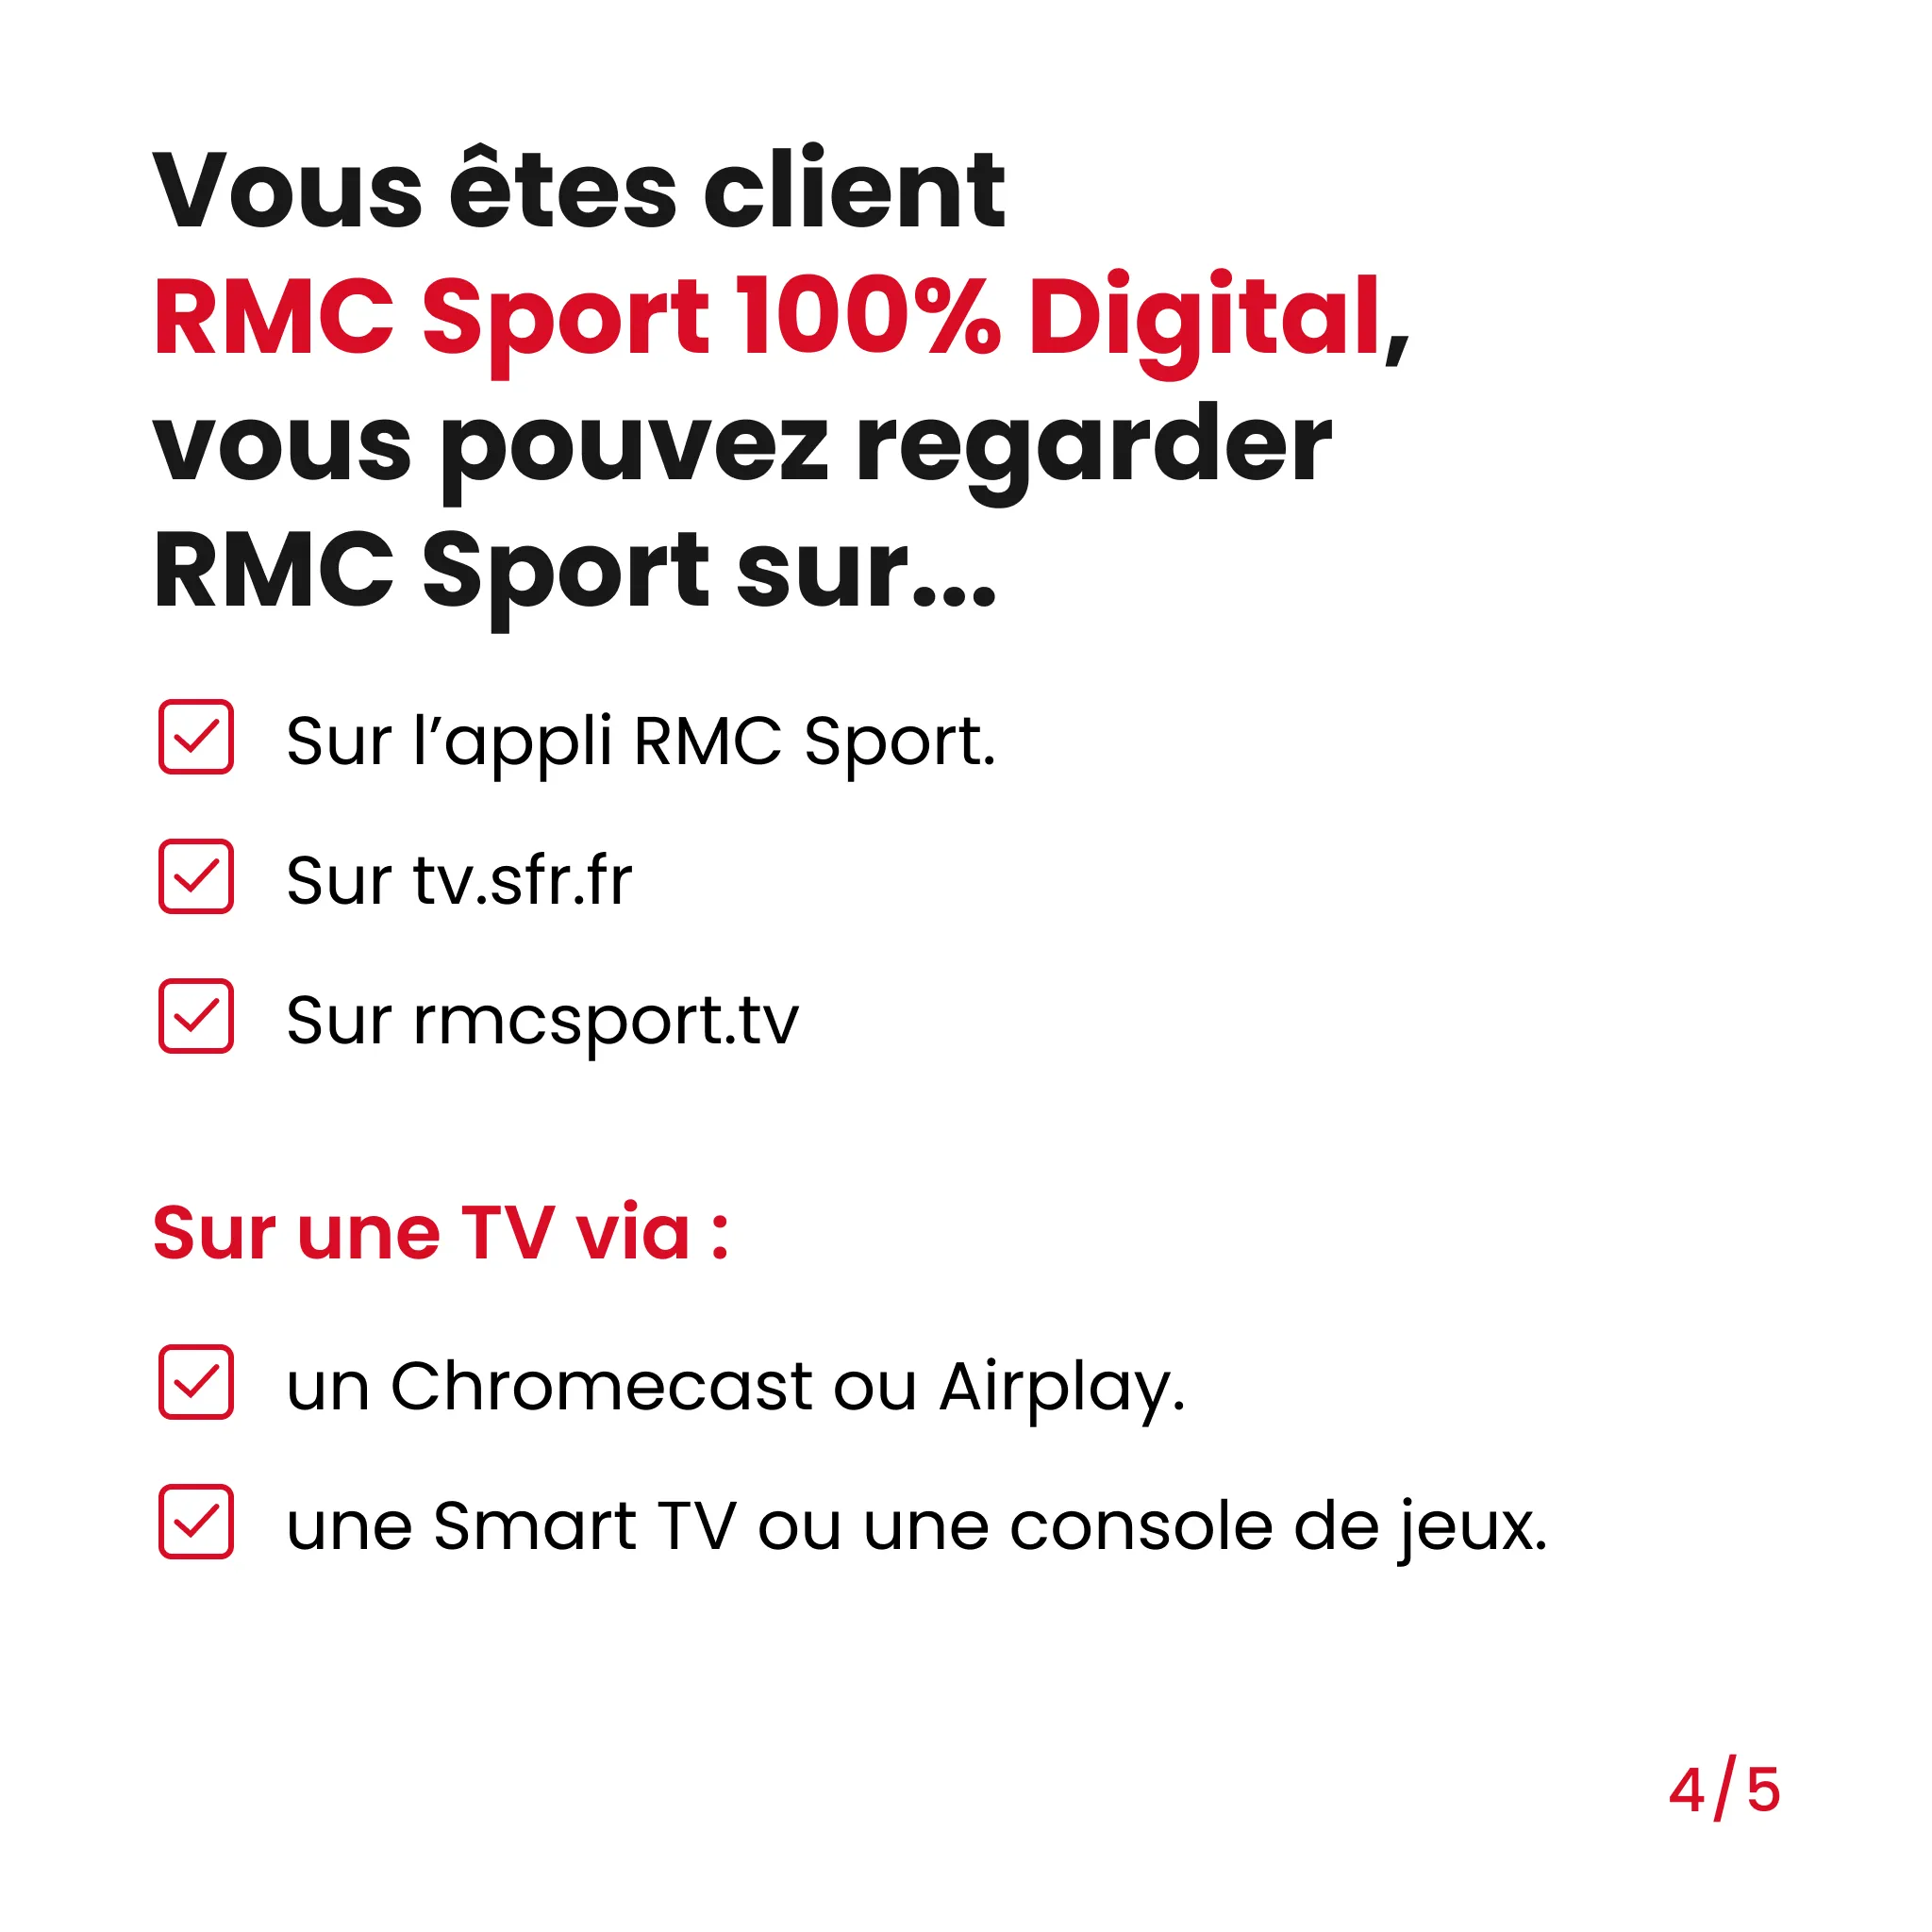 liste sur laquelle vous pouvez regarder RMC Sport 100% Digital si vous etes client RMC Sport 100% Digital